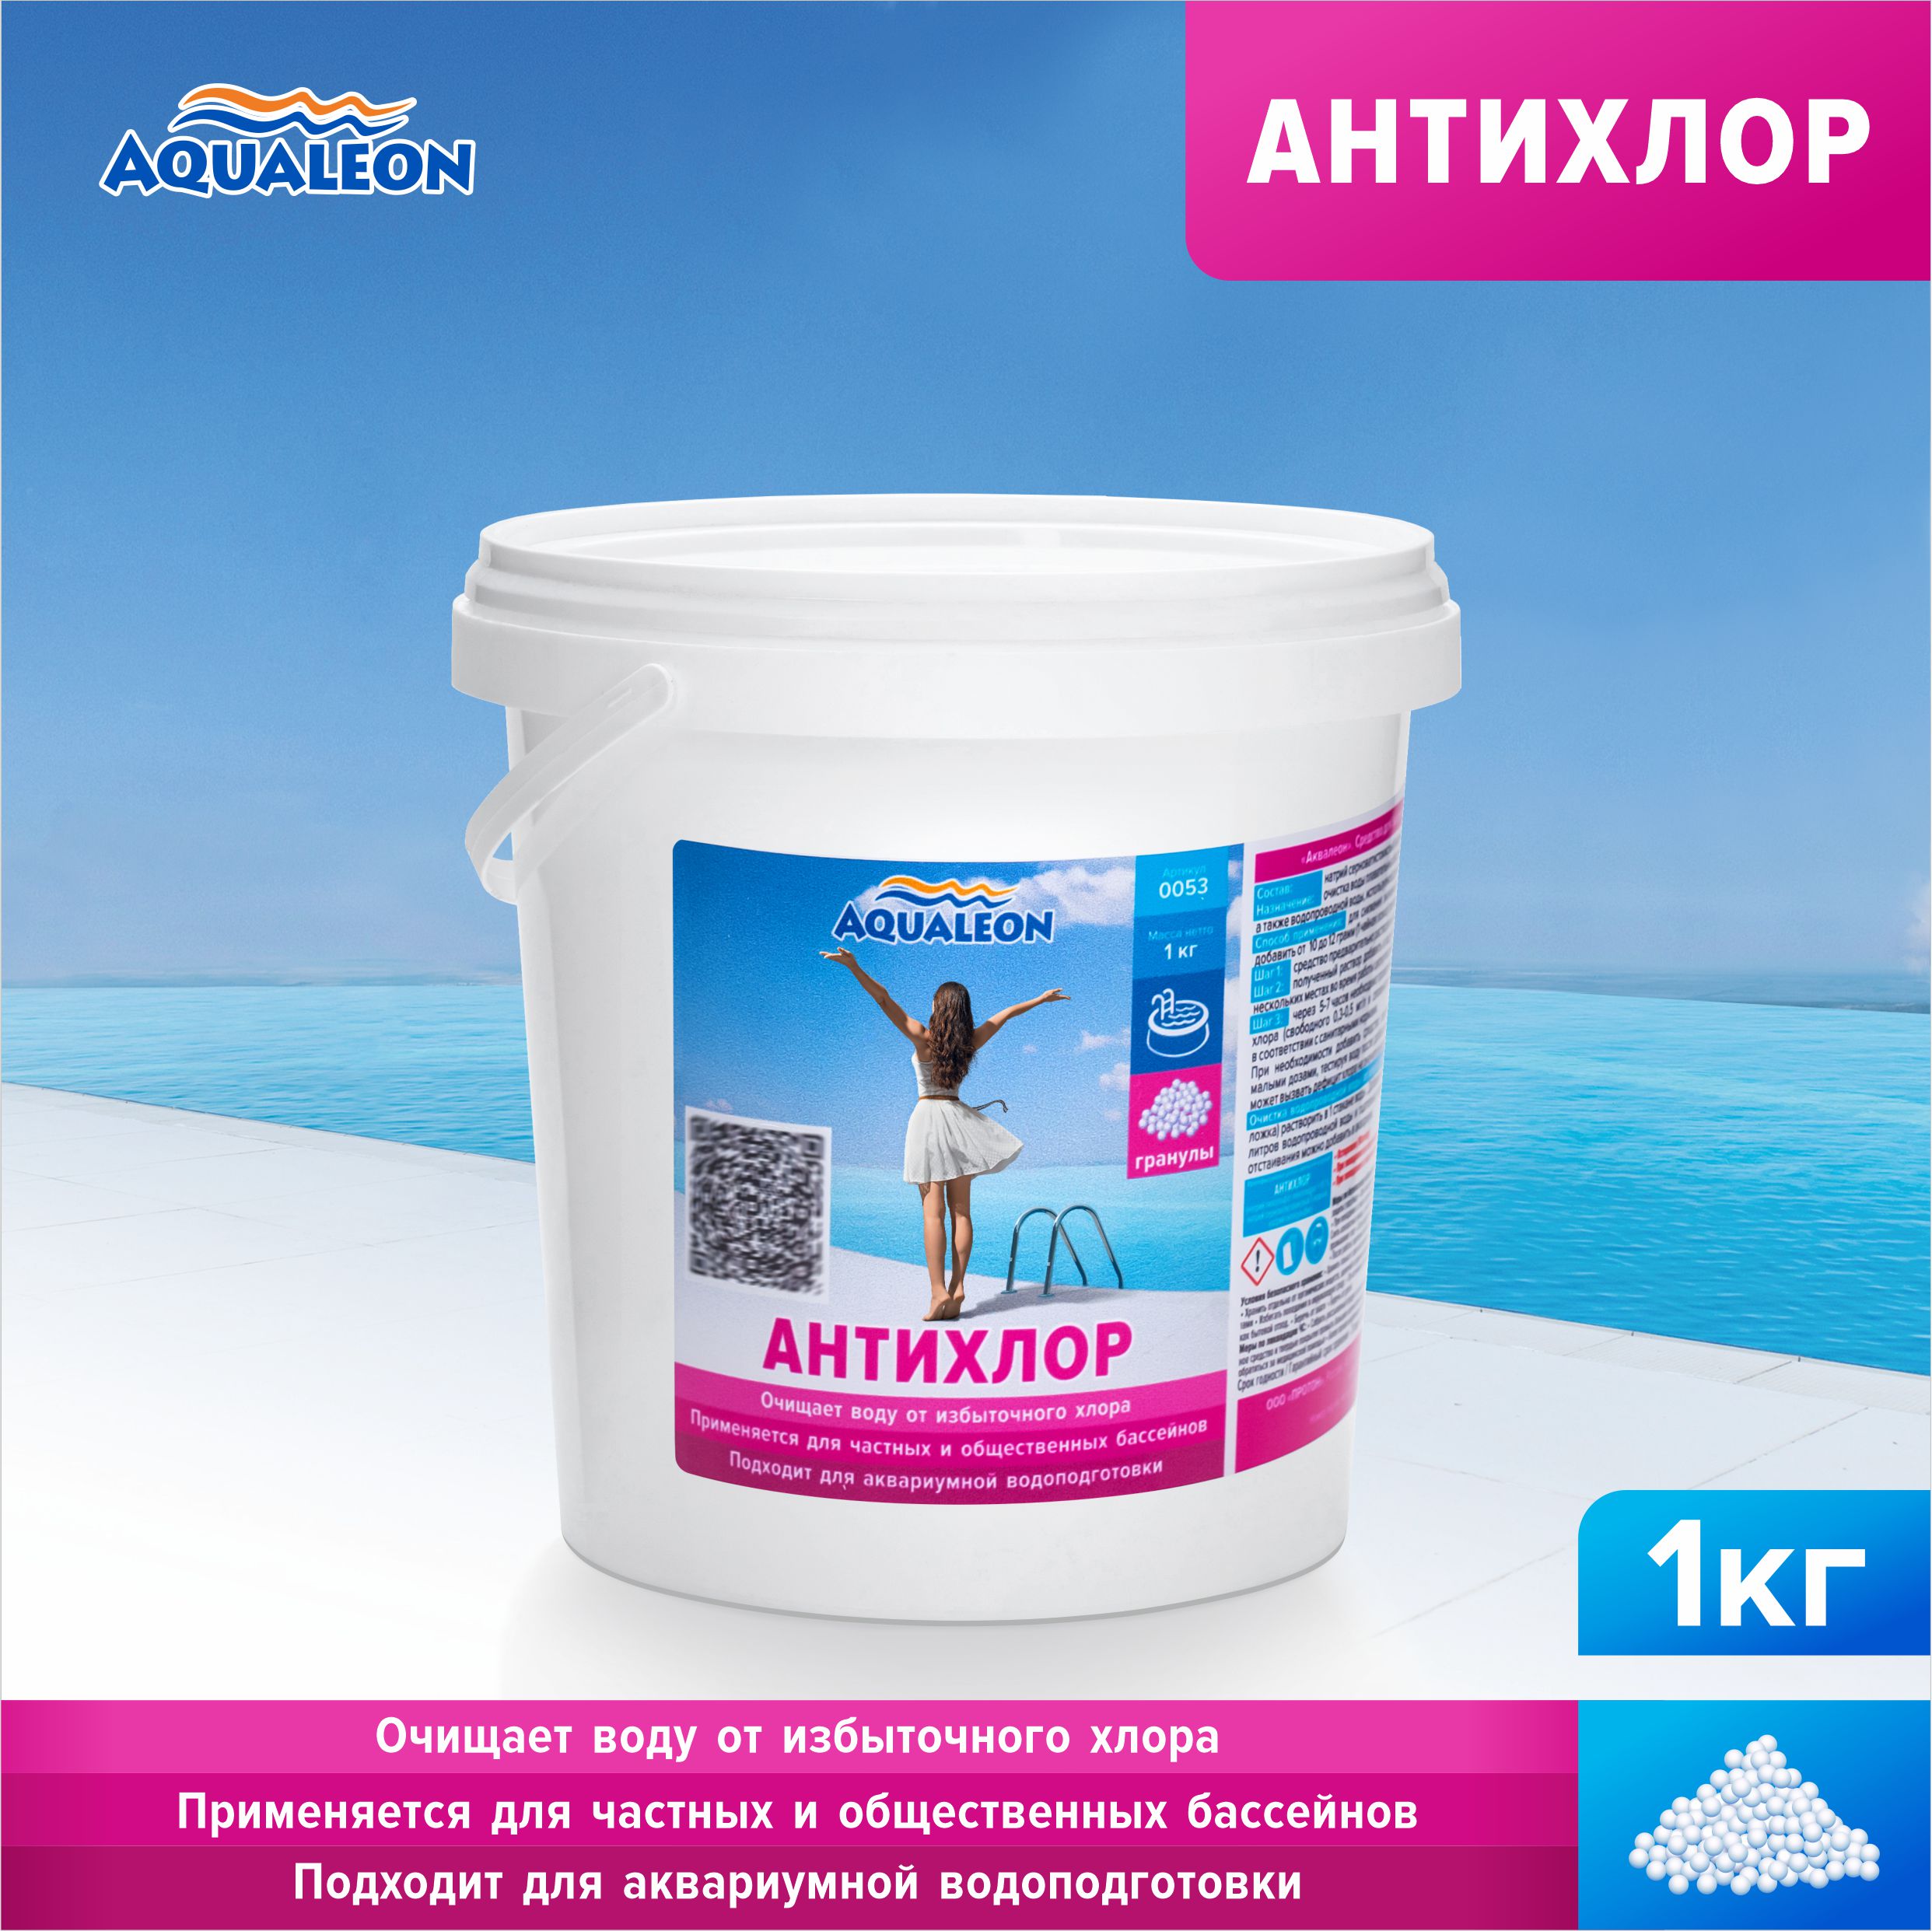 Антихлор Aqualeon в гранулах 1 кг, арт. 0053